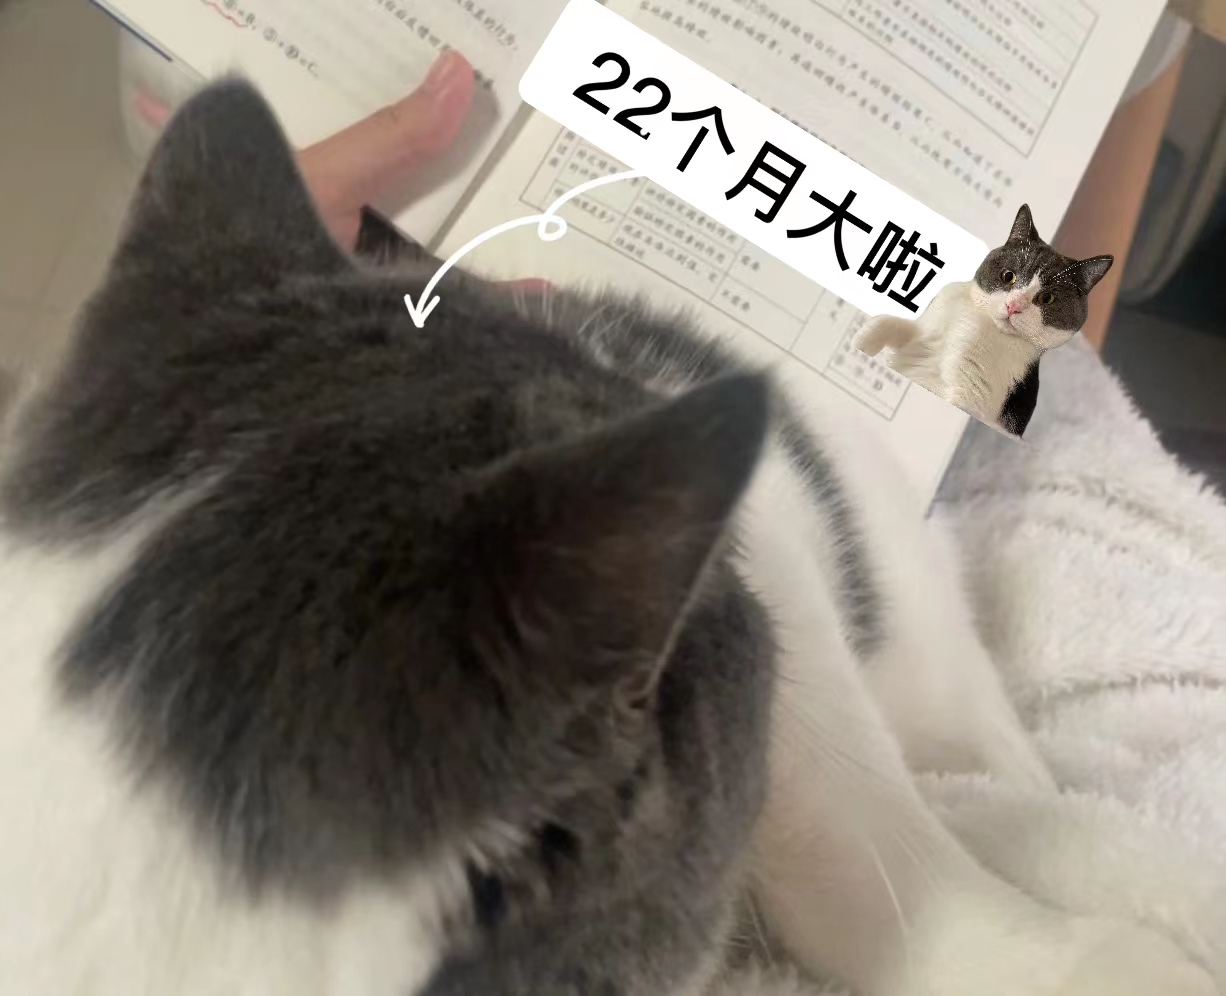 我与“22”个月大的猫猫看书.jpg